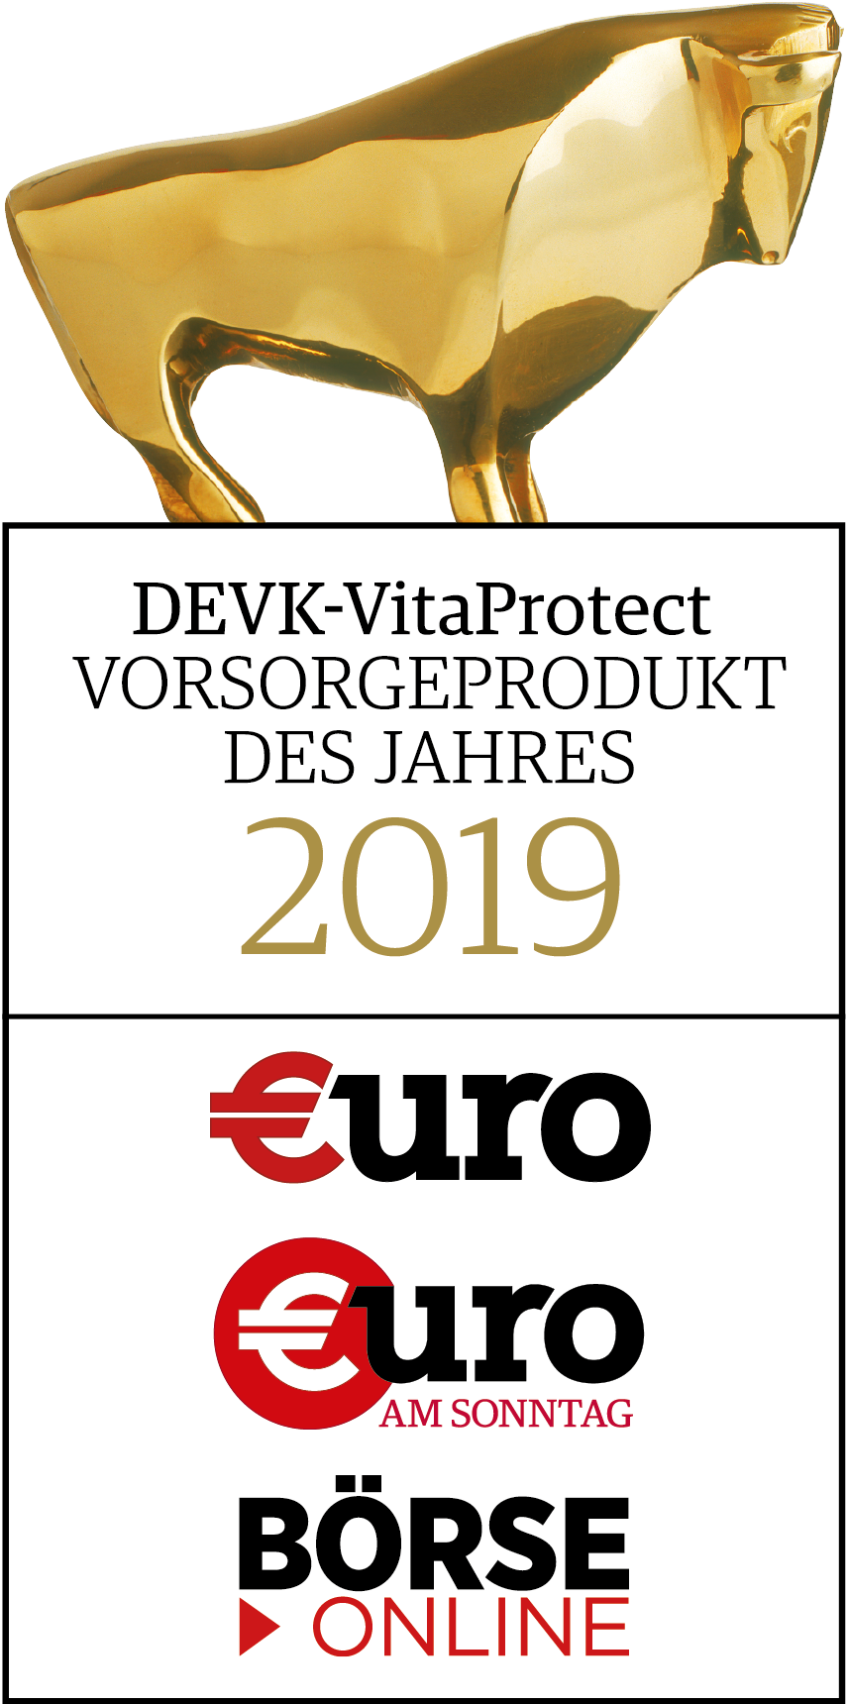 Finanzen-Verlag: DEVK-VitaProtect ist Vorsorgeprodukt des Jahres 2019